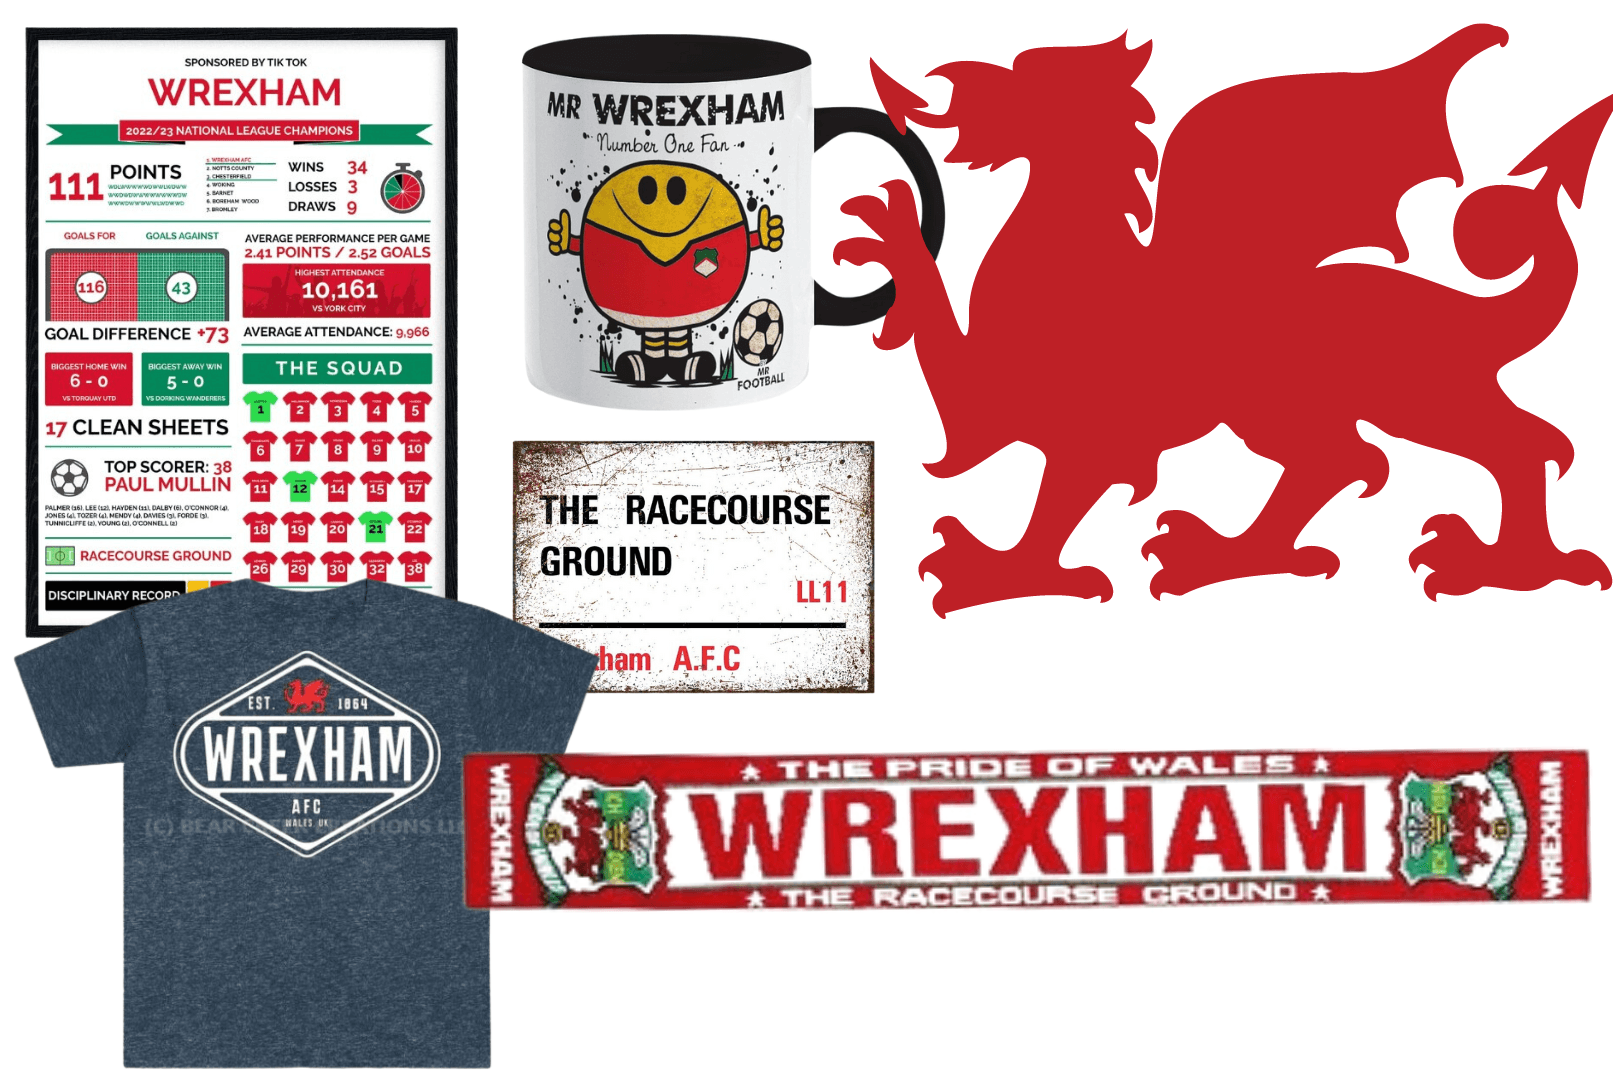 Wrexham merchandise